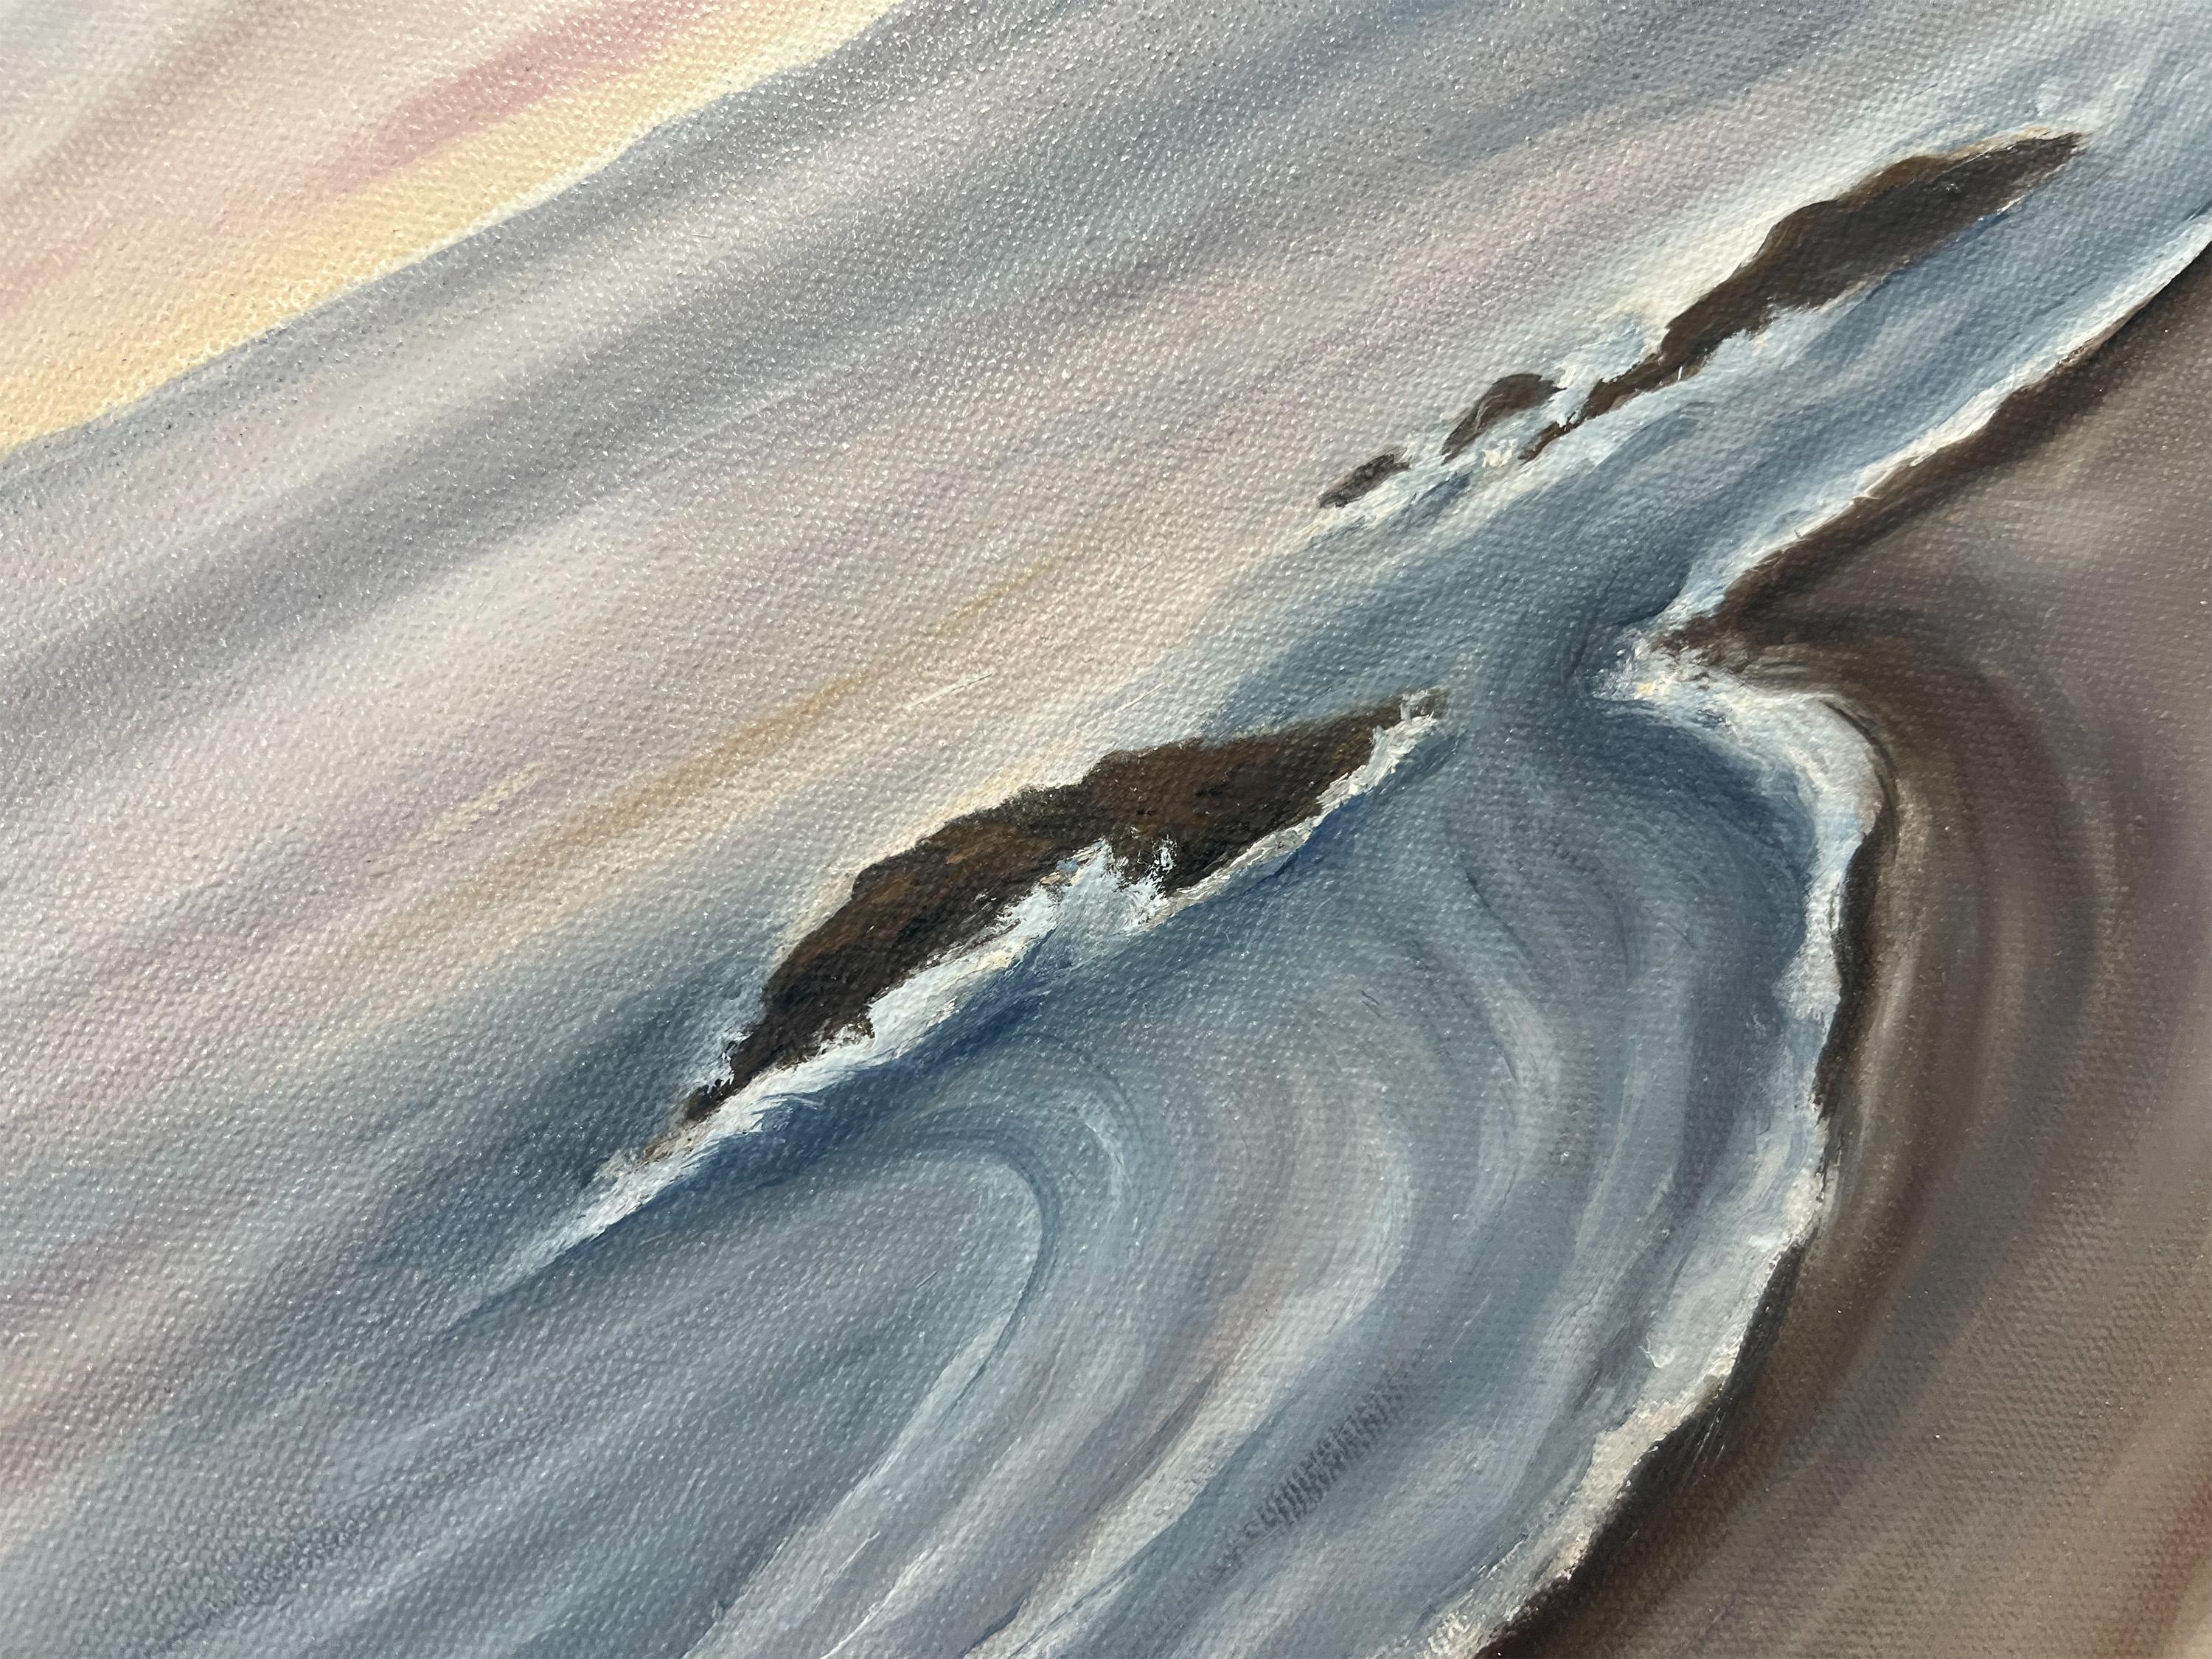 <p>Commentaires de l'artiste<br />L'artiste Pamela Hoke présente un paysage marin d'une côte tranquille dans les dernières heures avant le coucher du soleil. Elle se rappelle avoir trouvé une plume au hasard sur le sol, tout ce dont elle avait